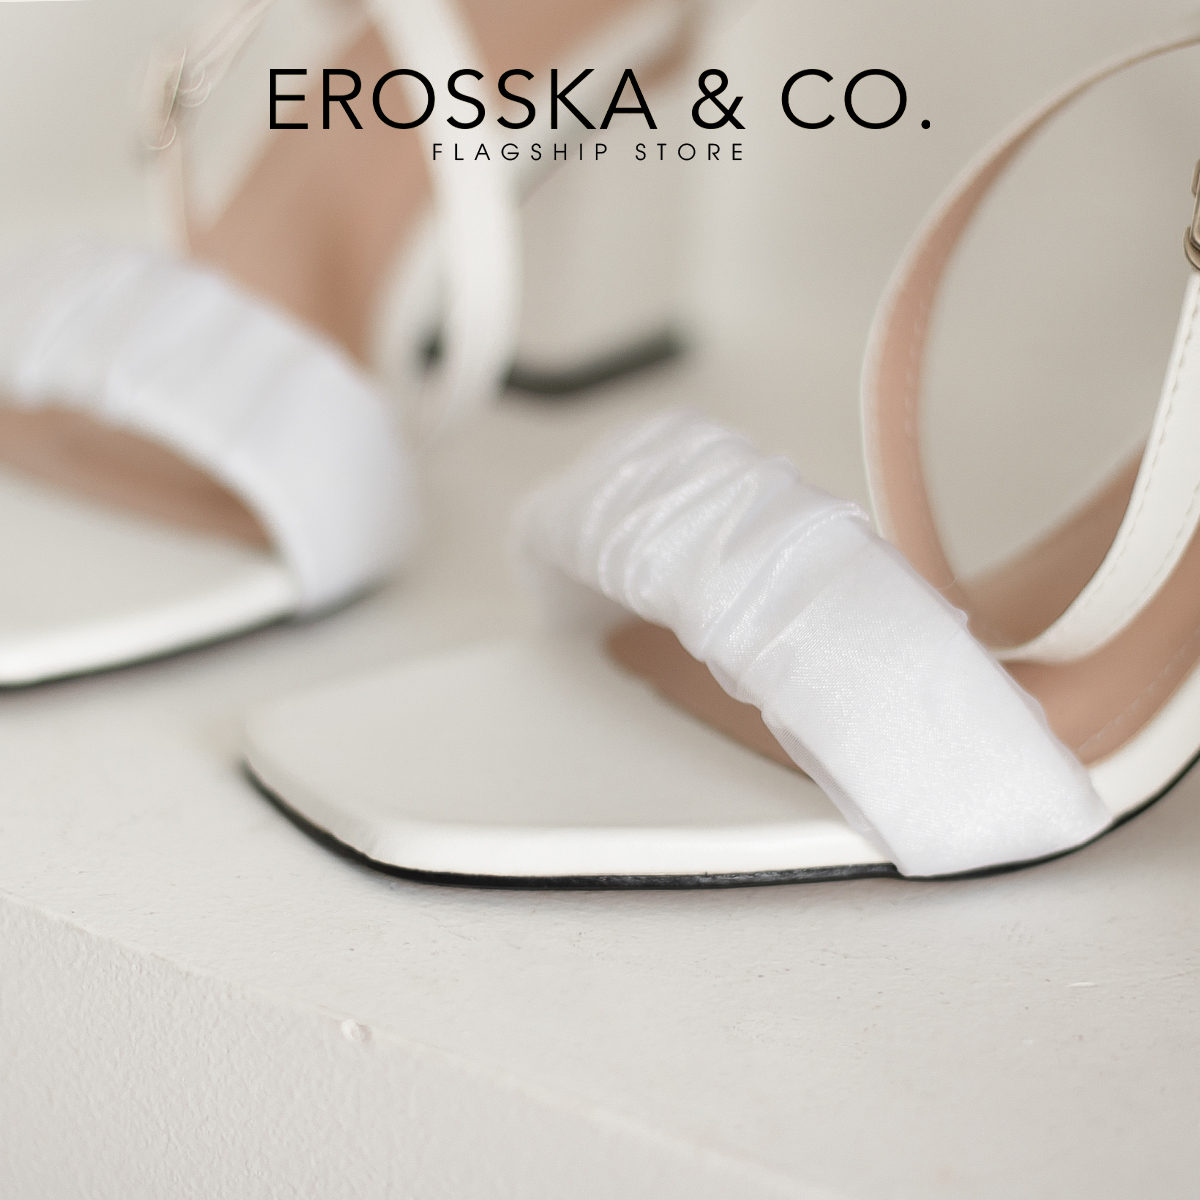 Erosska - Giày sandal cao gót nữ quai nhún lưới phối dây quai mảnh cao 7cm  - EB050